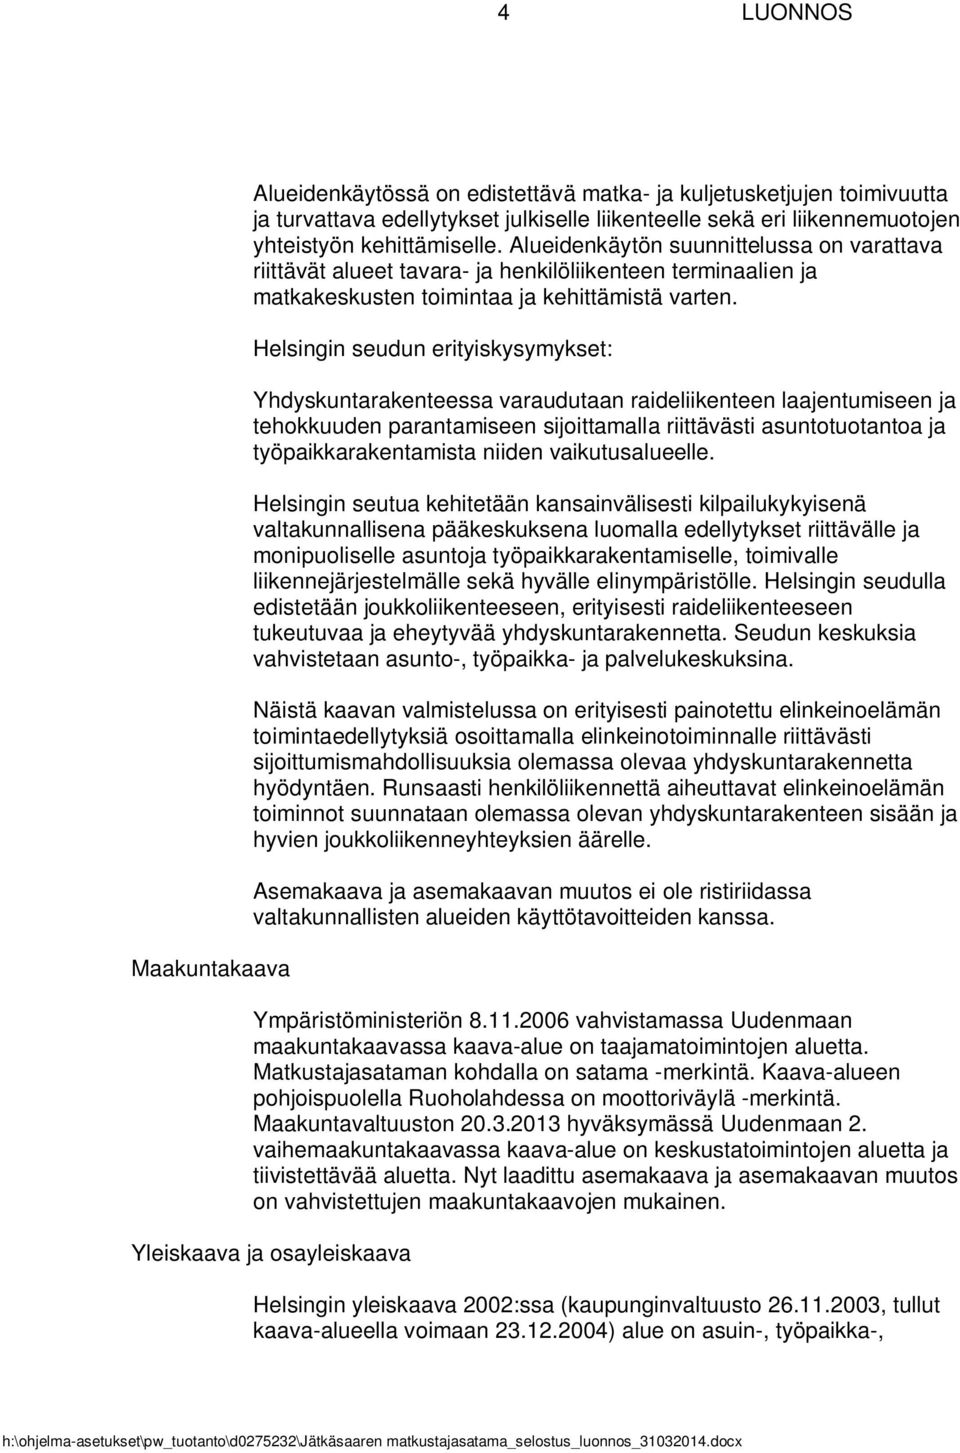 Helsingin seudun erityiskysymykset: Yhdyskuntarakenteessa varaudutaan raideliikenteen laajentumiseen ja tehokkuuden parantamiseen sijoittamalla riittävästi asuntotuotantoa ja työpaikkarakentamista